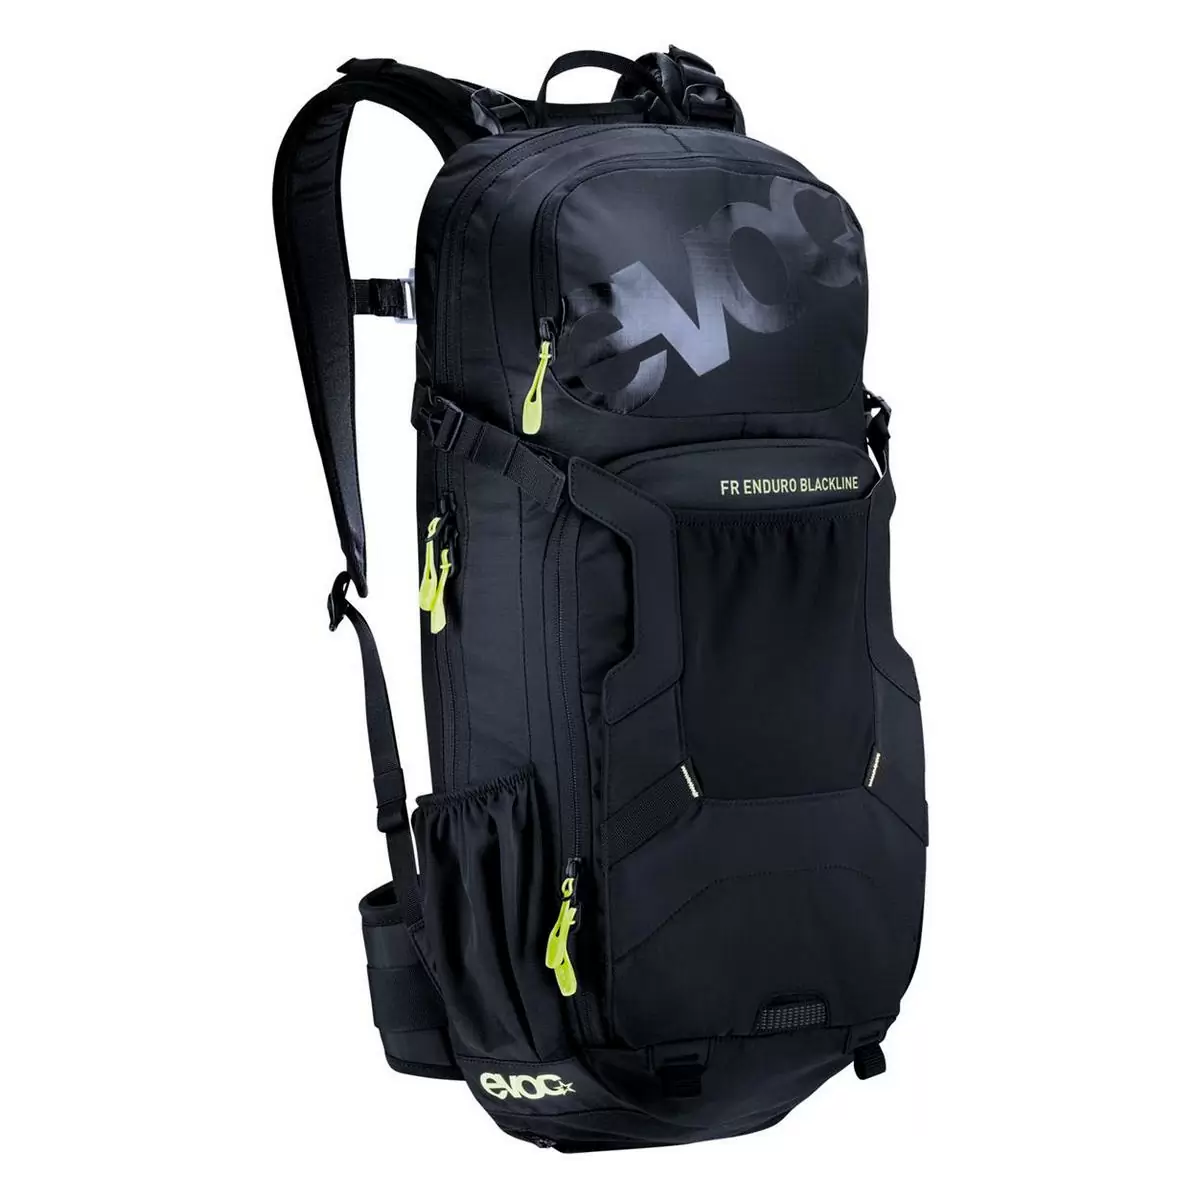 FR enduro blackline backpack 14lt with back protector size S - image